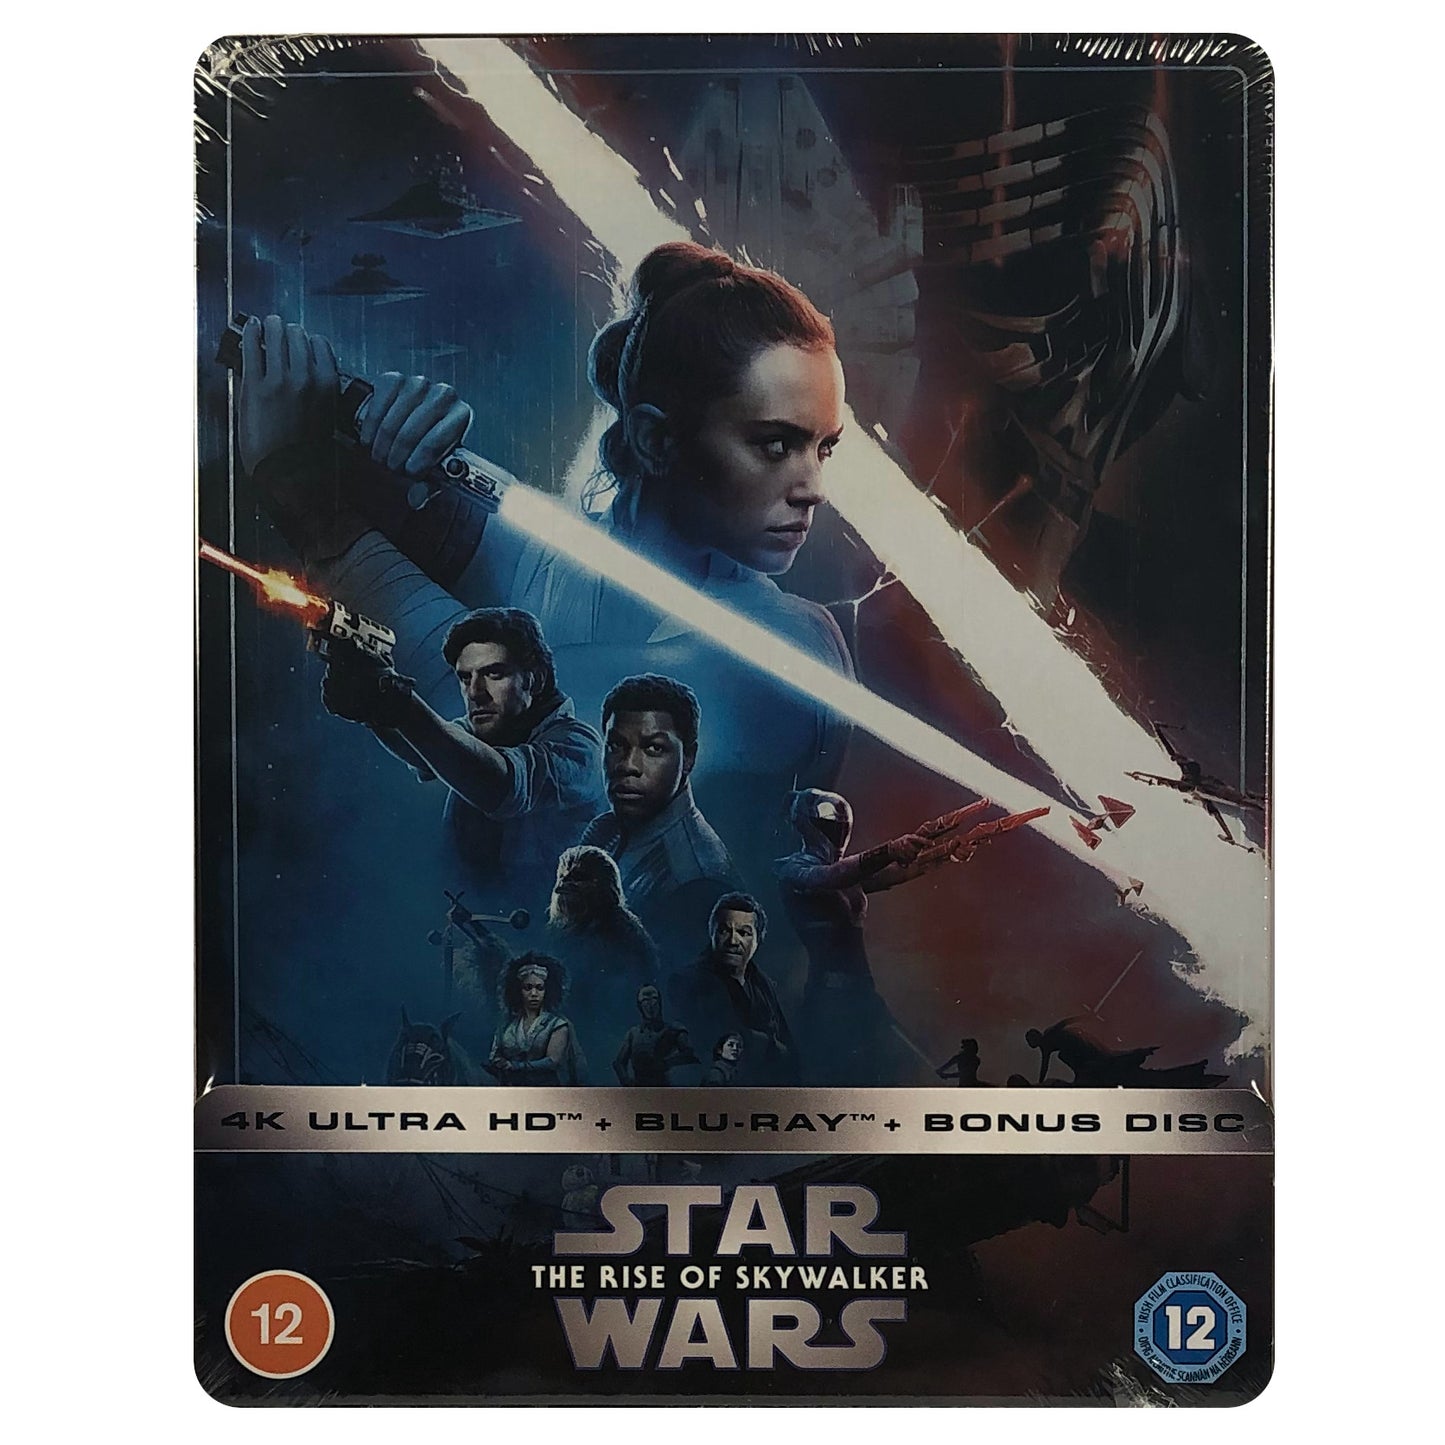 Star Wars: Episode IX - The Rise of Skywalker 4K Steelbook